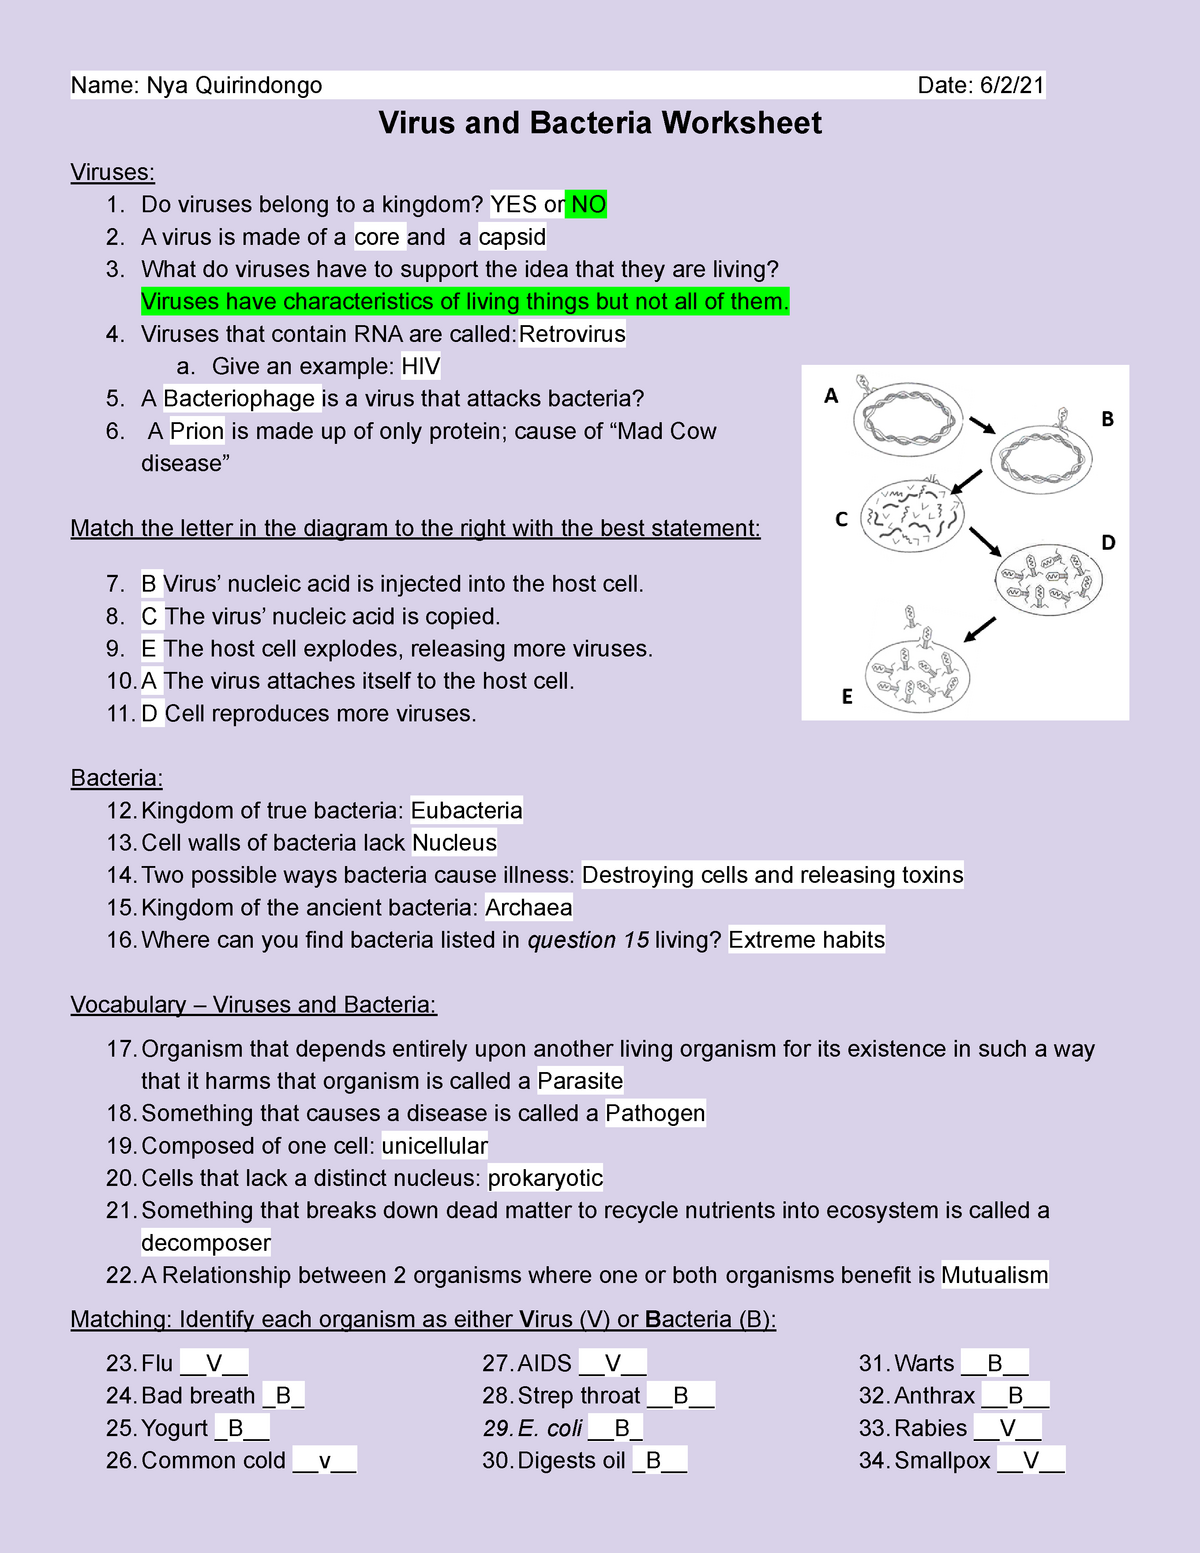 Copy of Virus and Bacteria Worksheet - BIO22 - General Biology With Regard To Viruses And Bacteria Worksheet